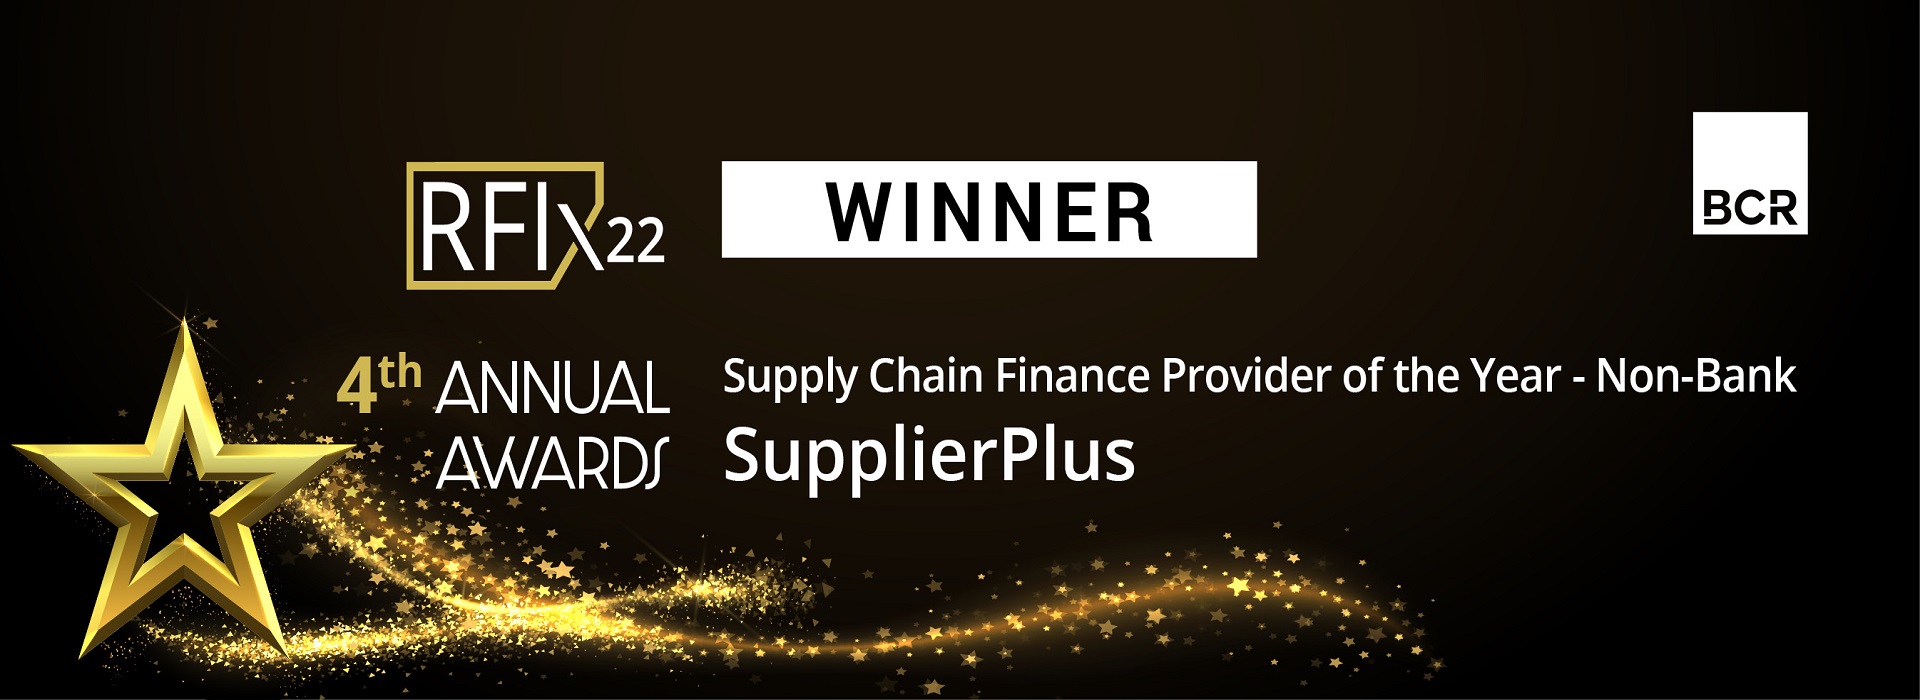 SupplierPlus has won an award